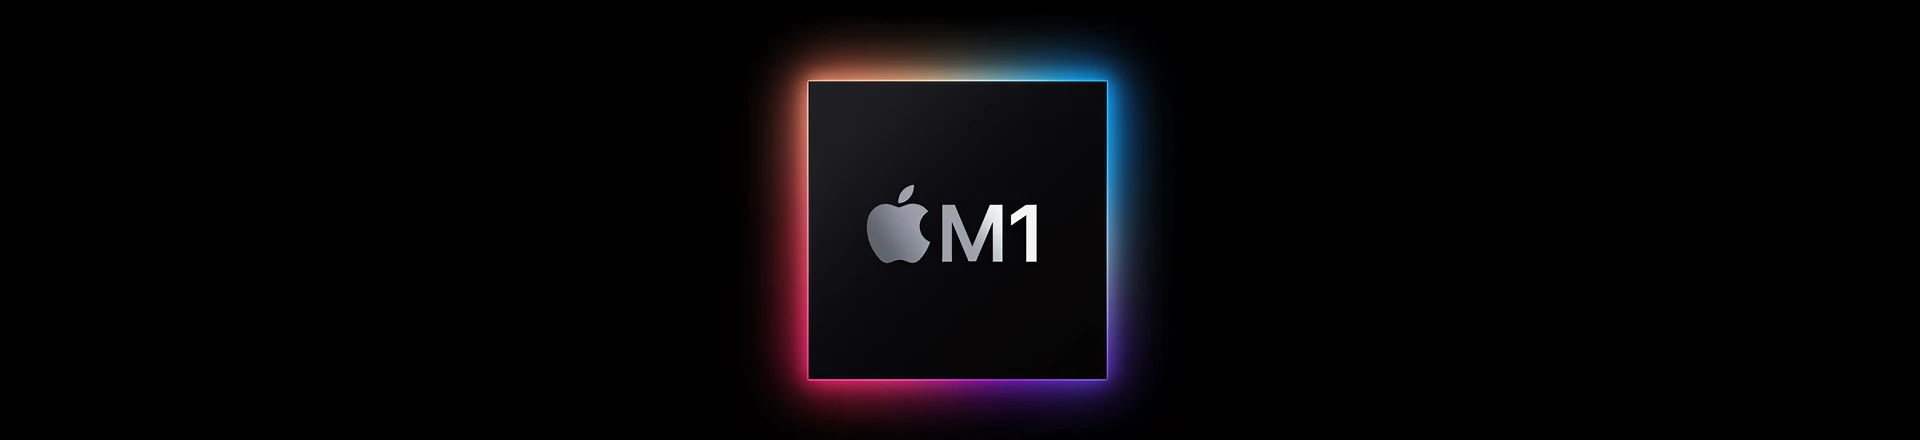 Arturia V Collection 8.2 - aktualizacja dodająca wsparcie dla Apple M1 już dostępna